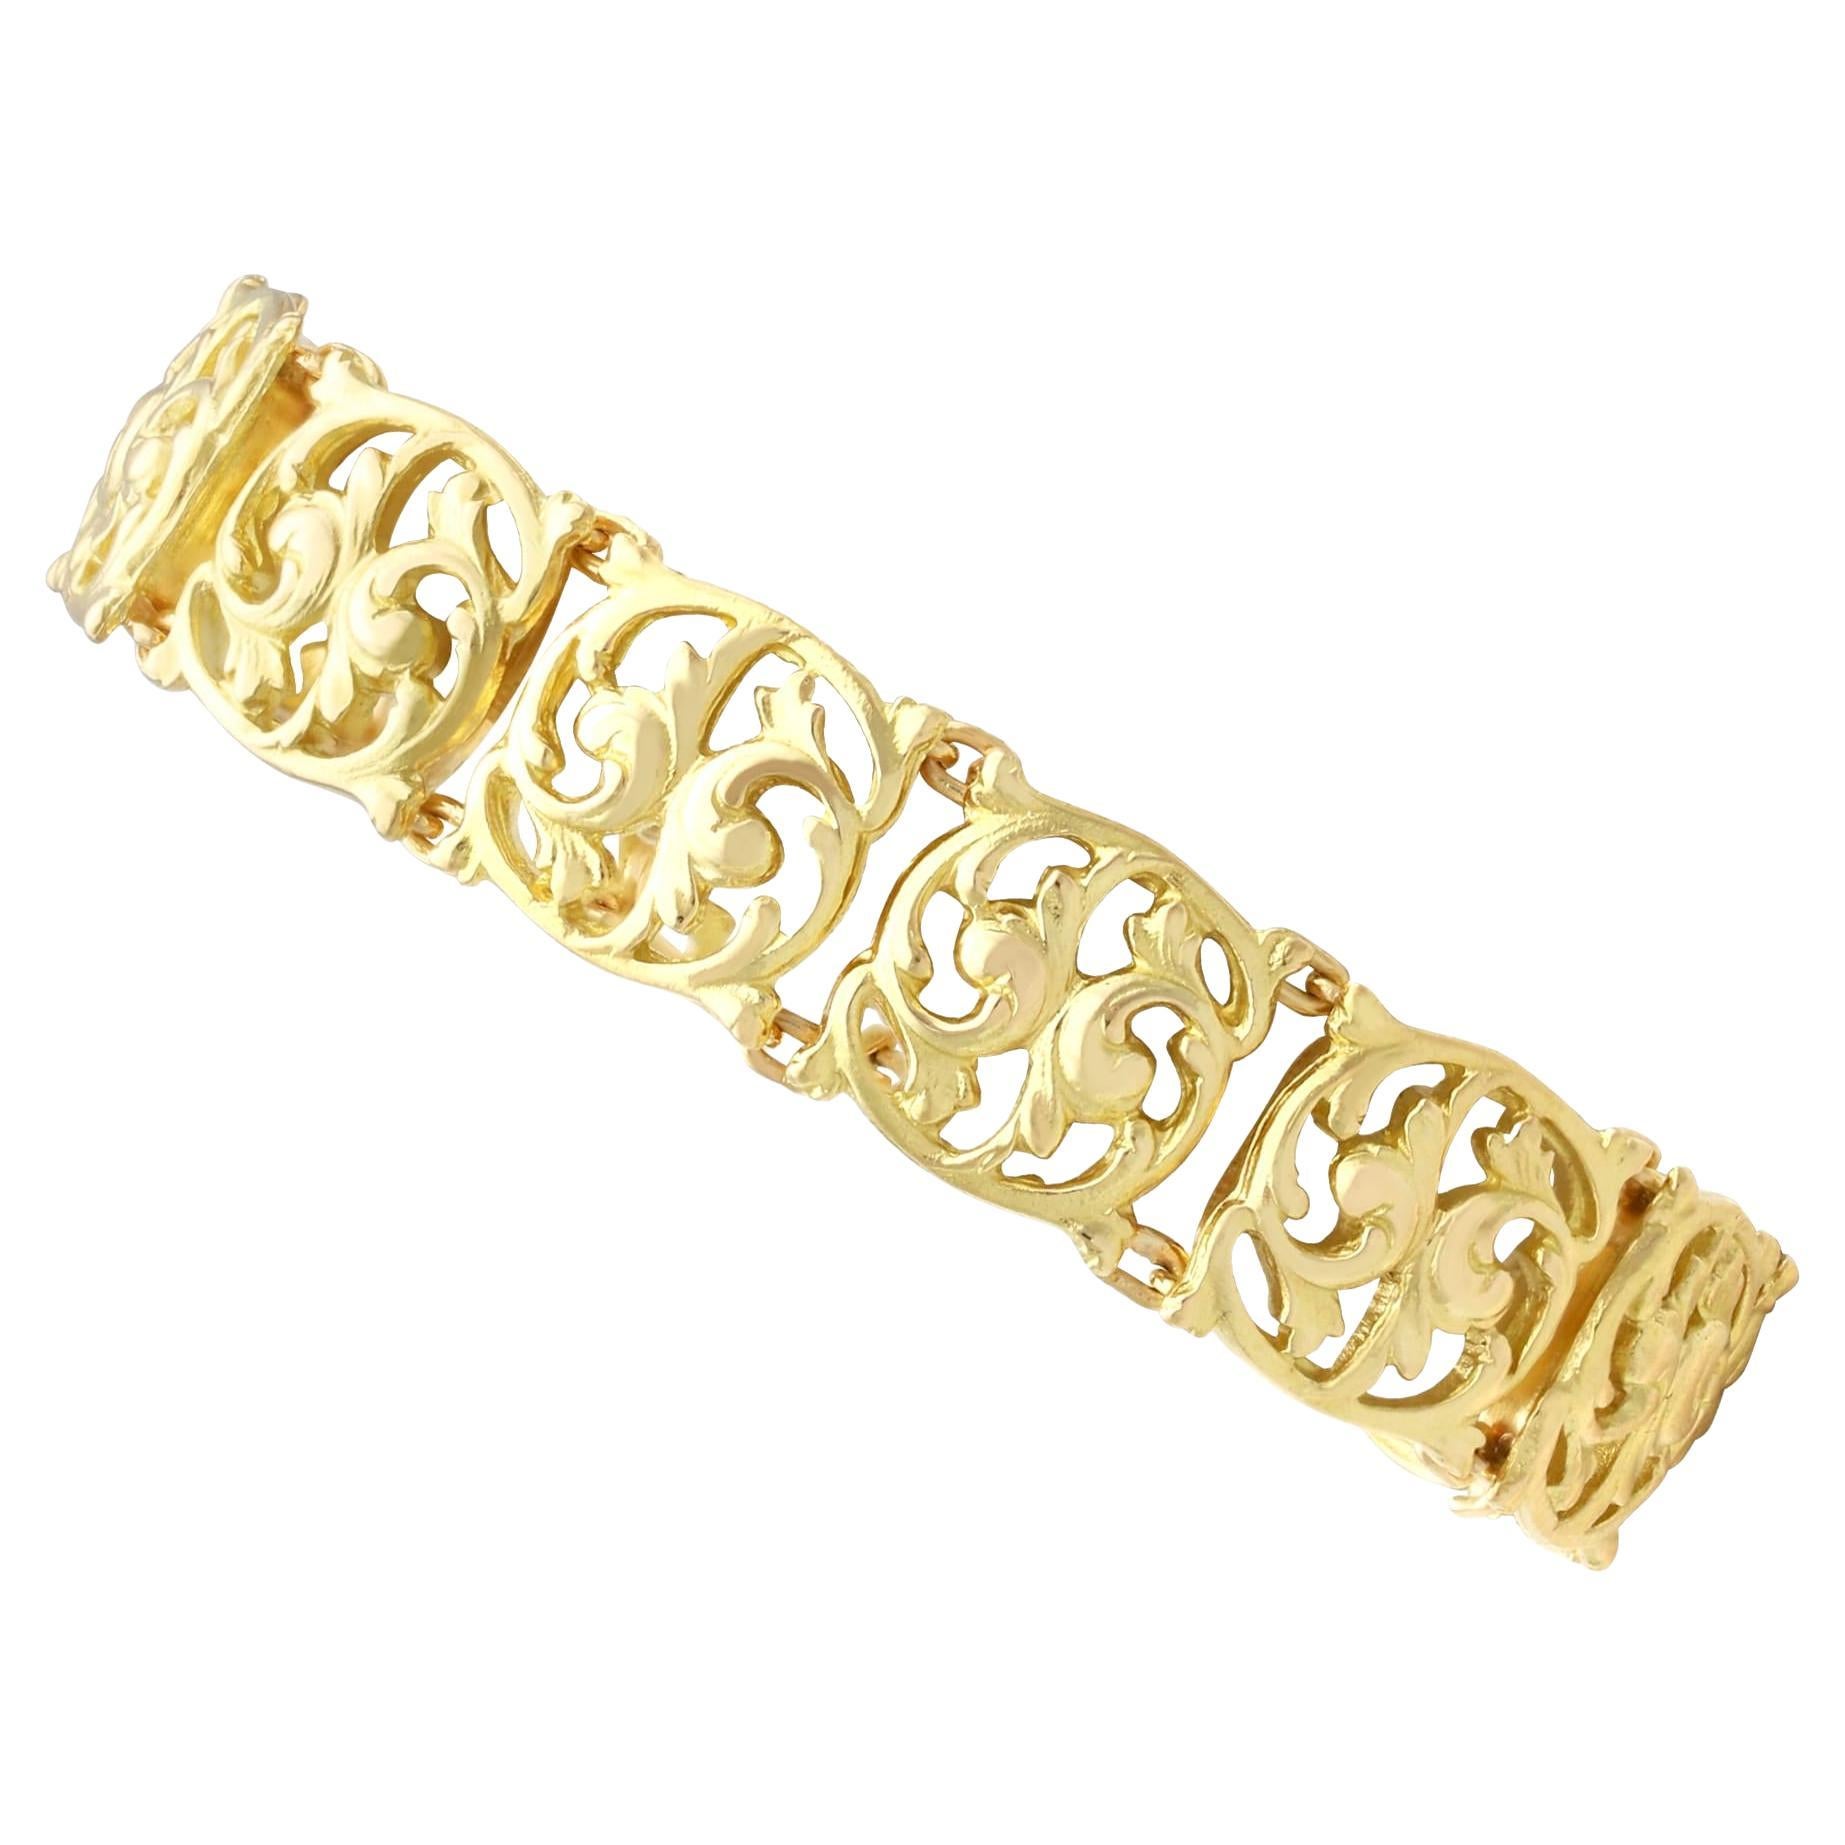 Antique Art Nouveau 18 Karat Yellow Gold Bracelet For Sale